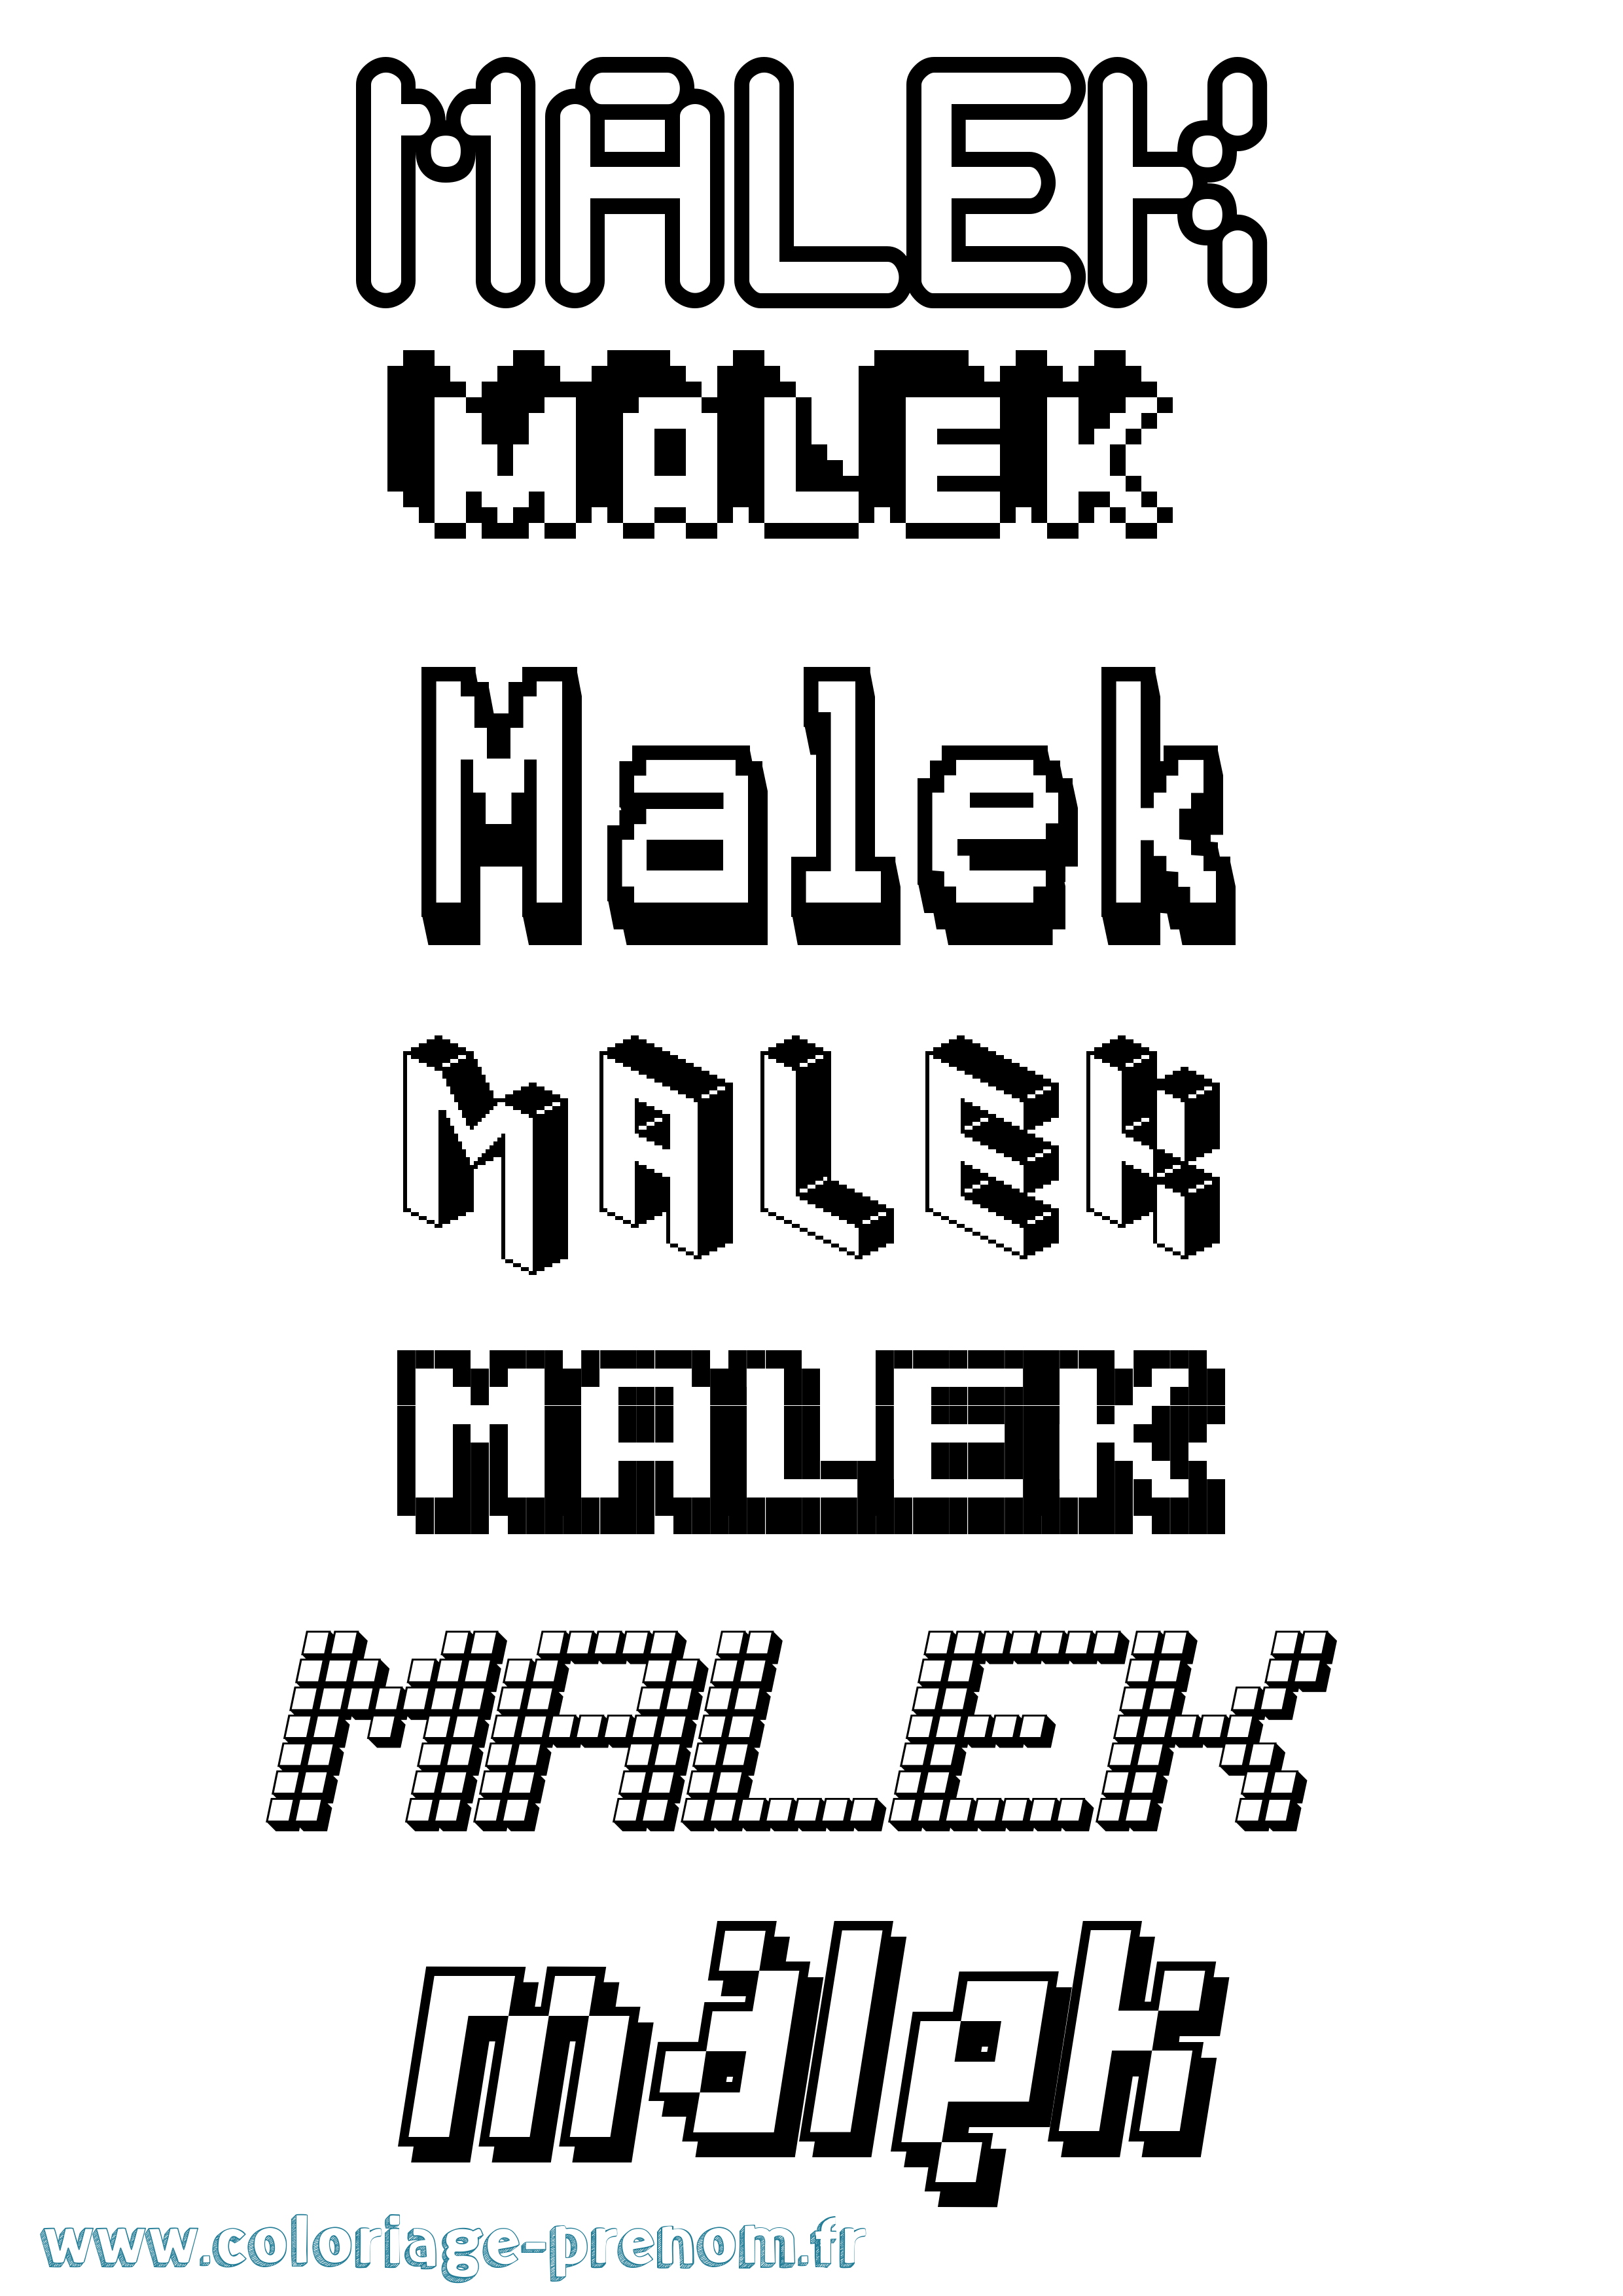 Coloriage prénom Malek